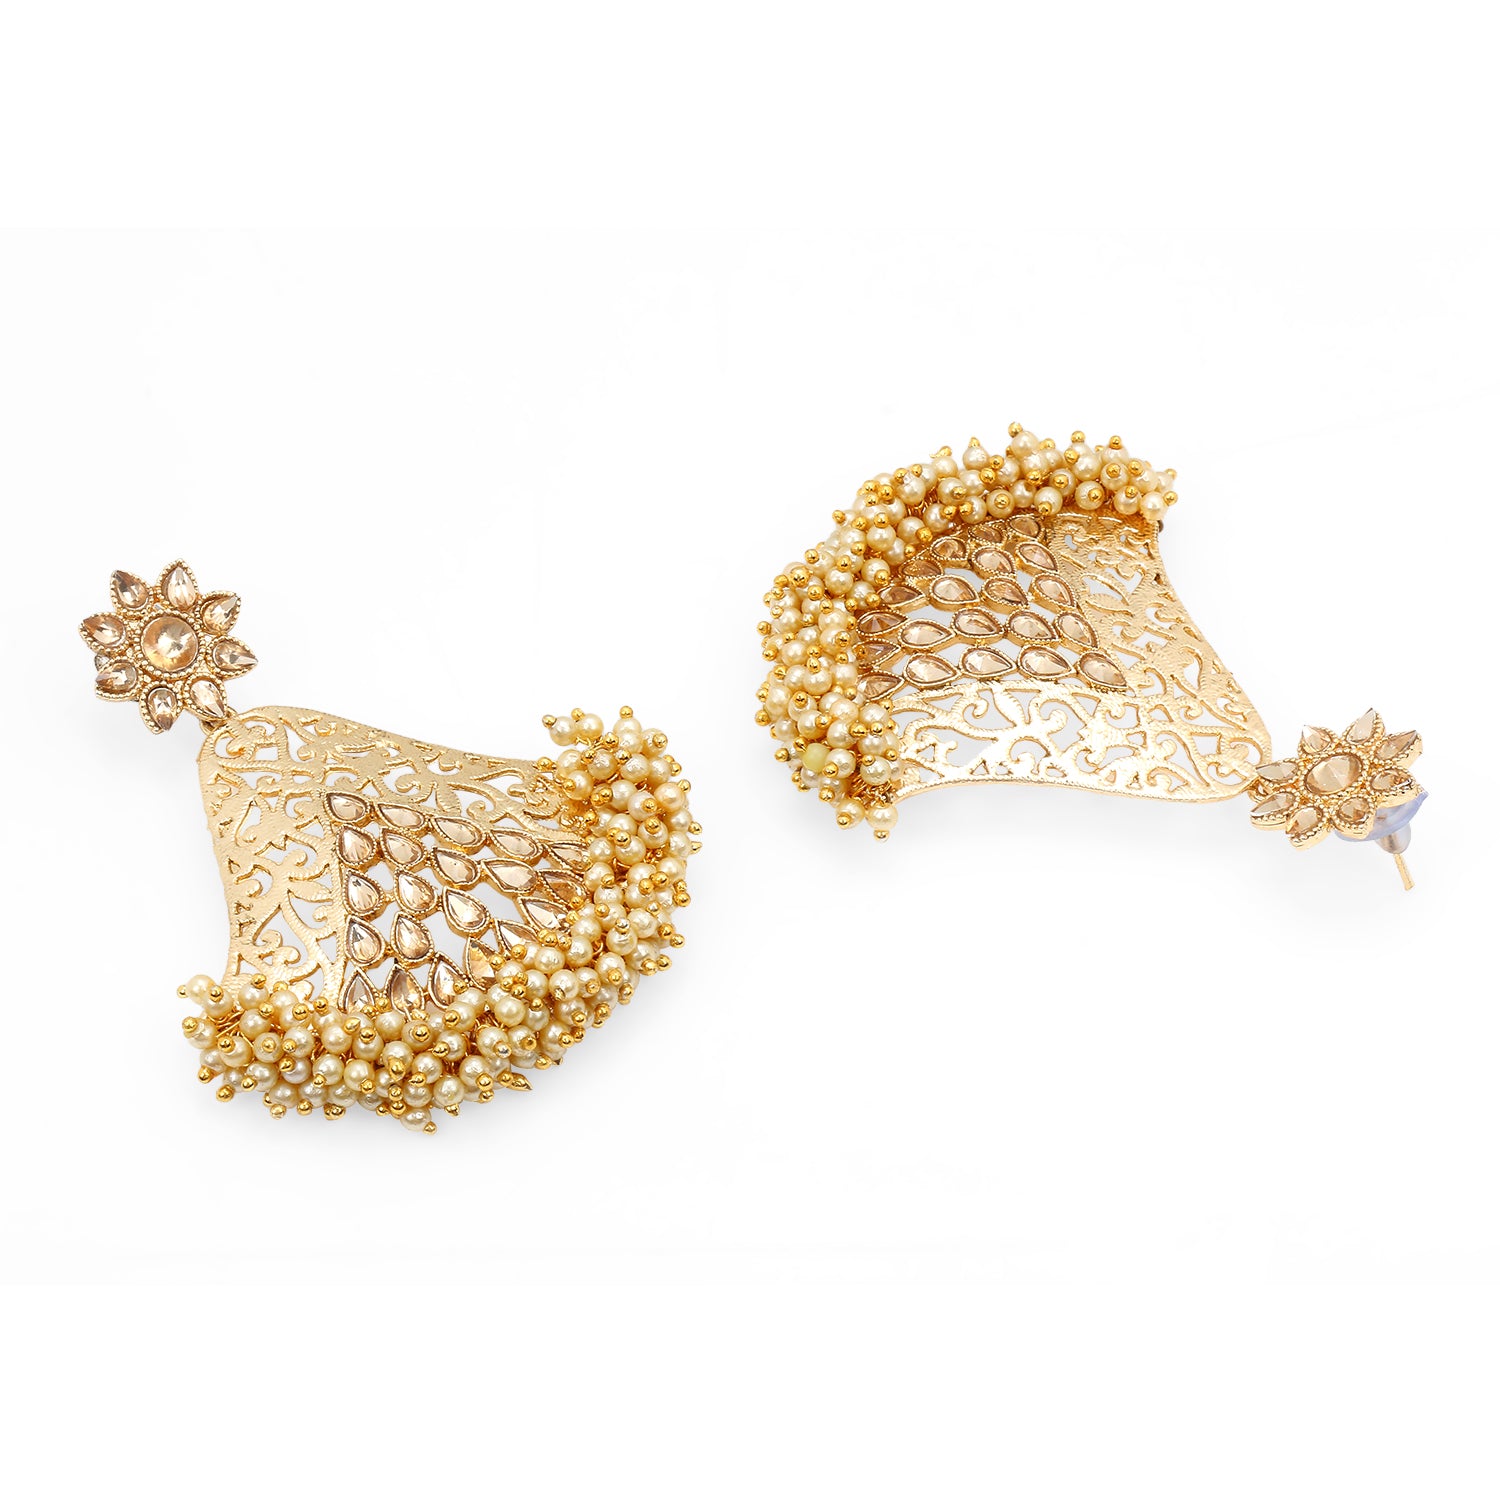 Stunning bell shape pearls beaded dangle earrings for women